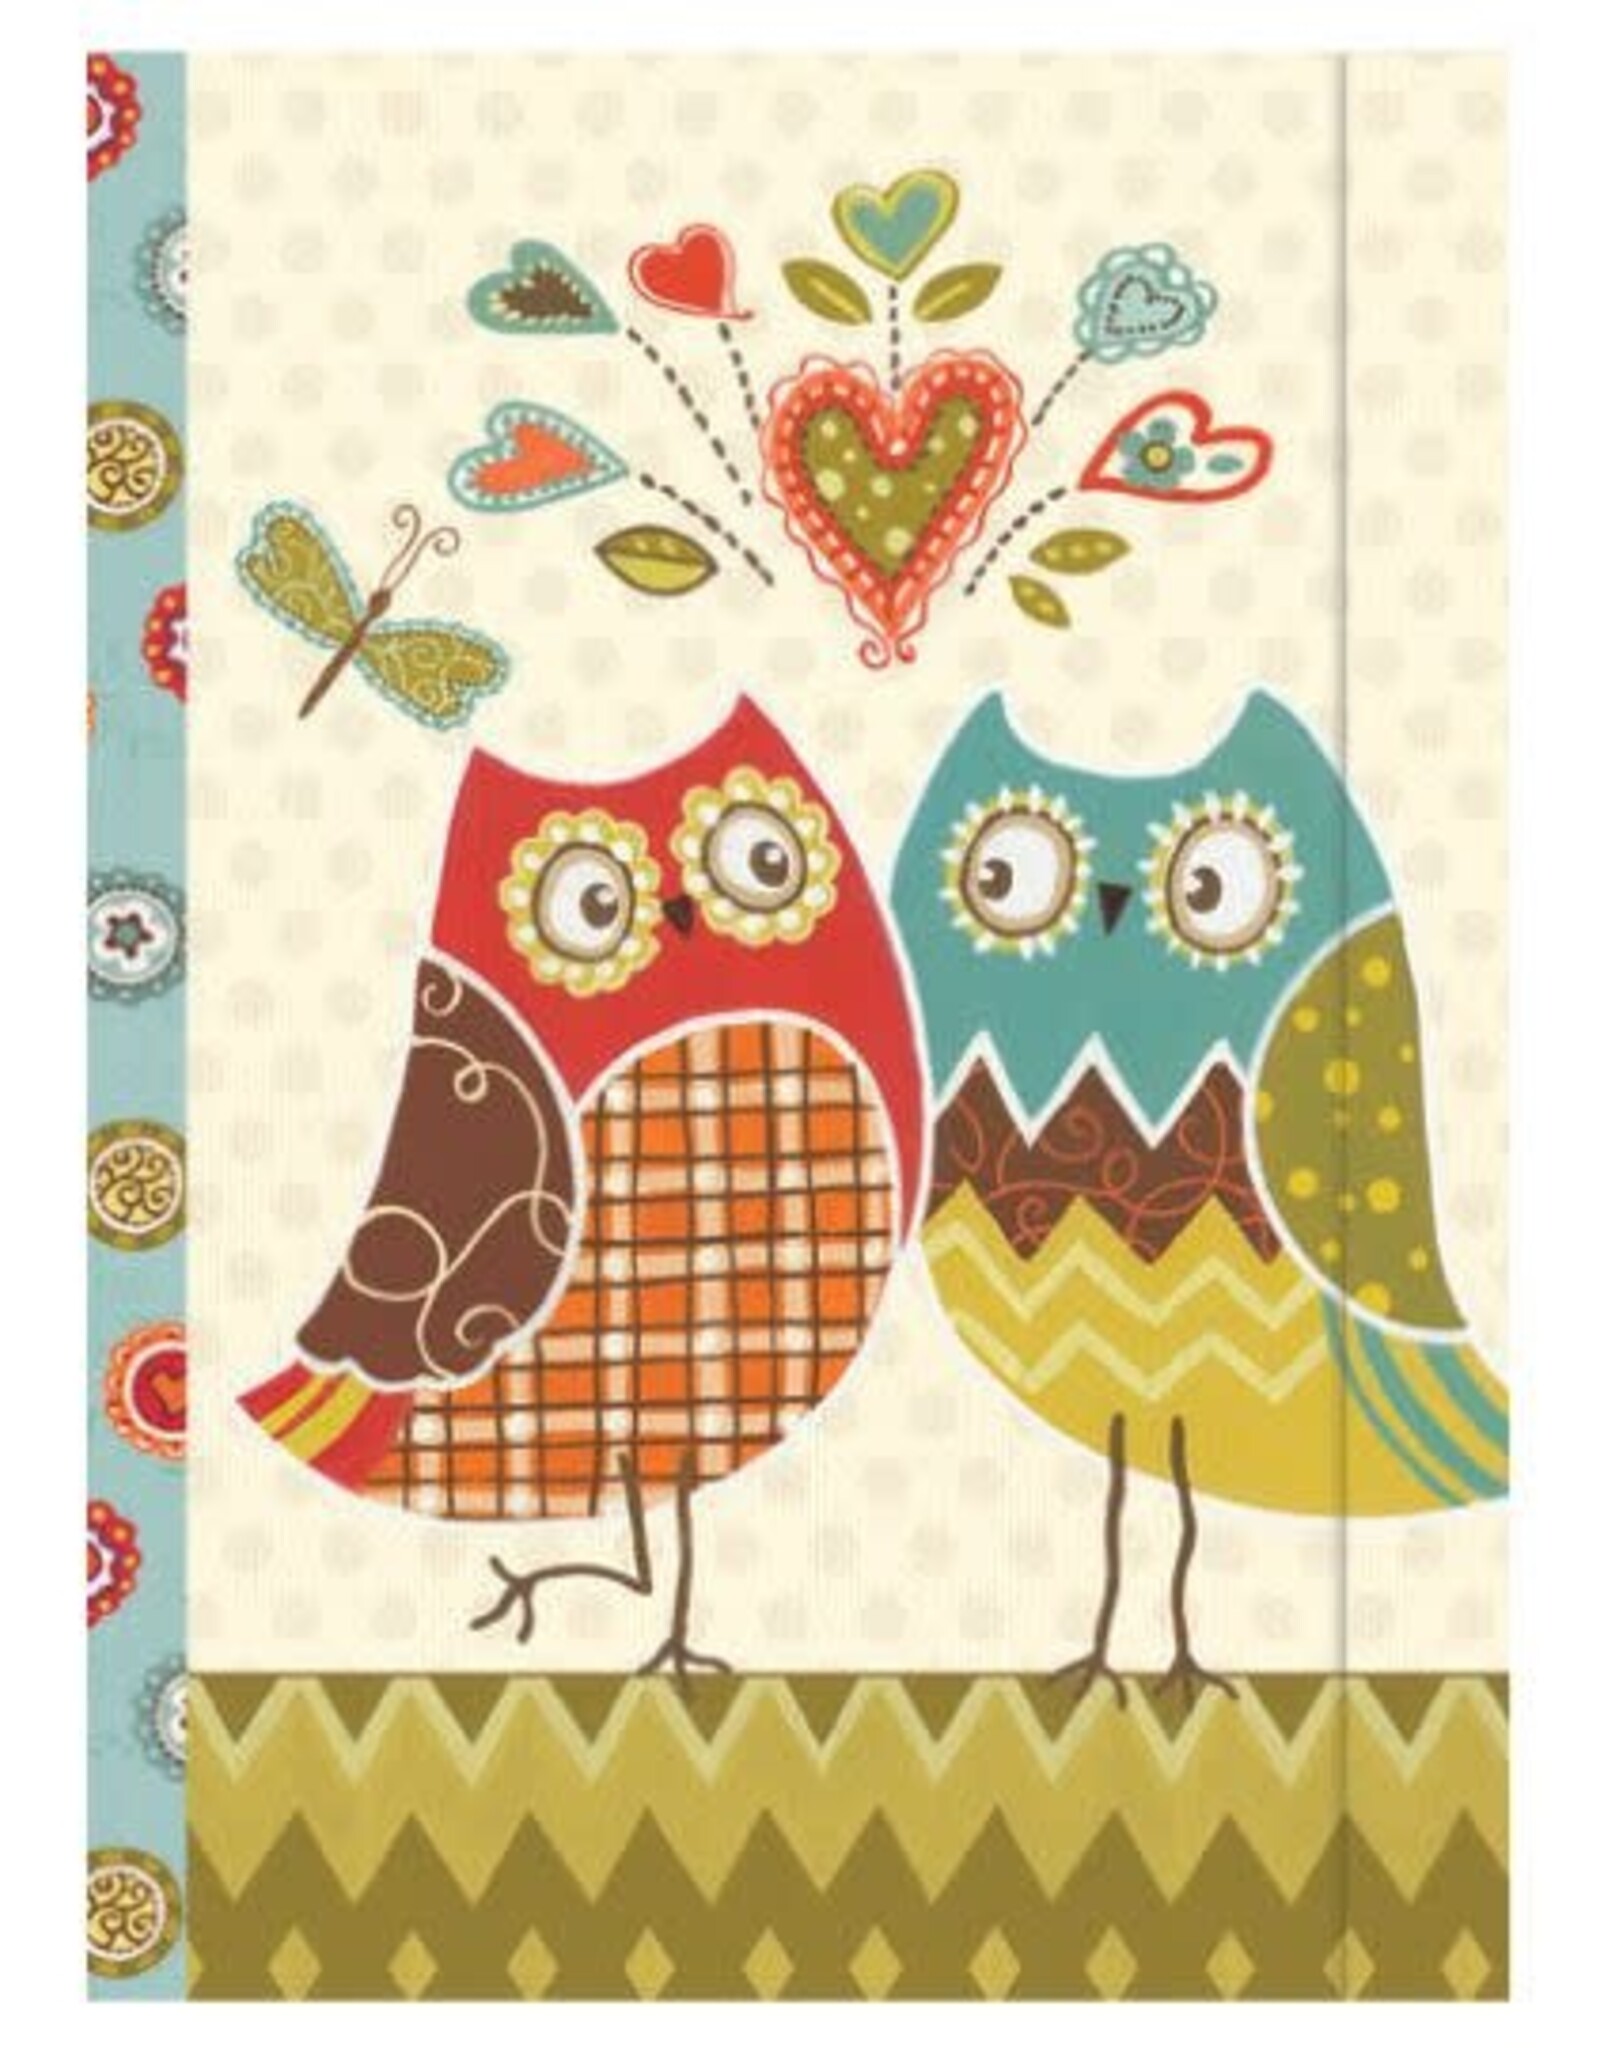 Wonderful Owls Journal 7" x 5"